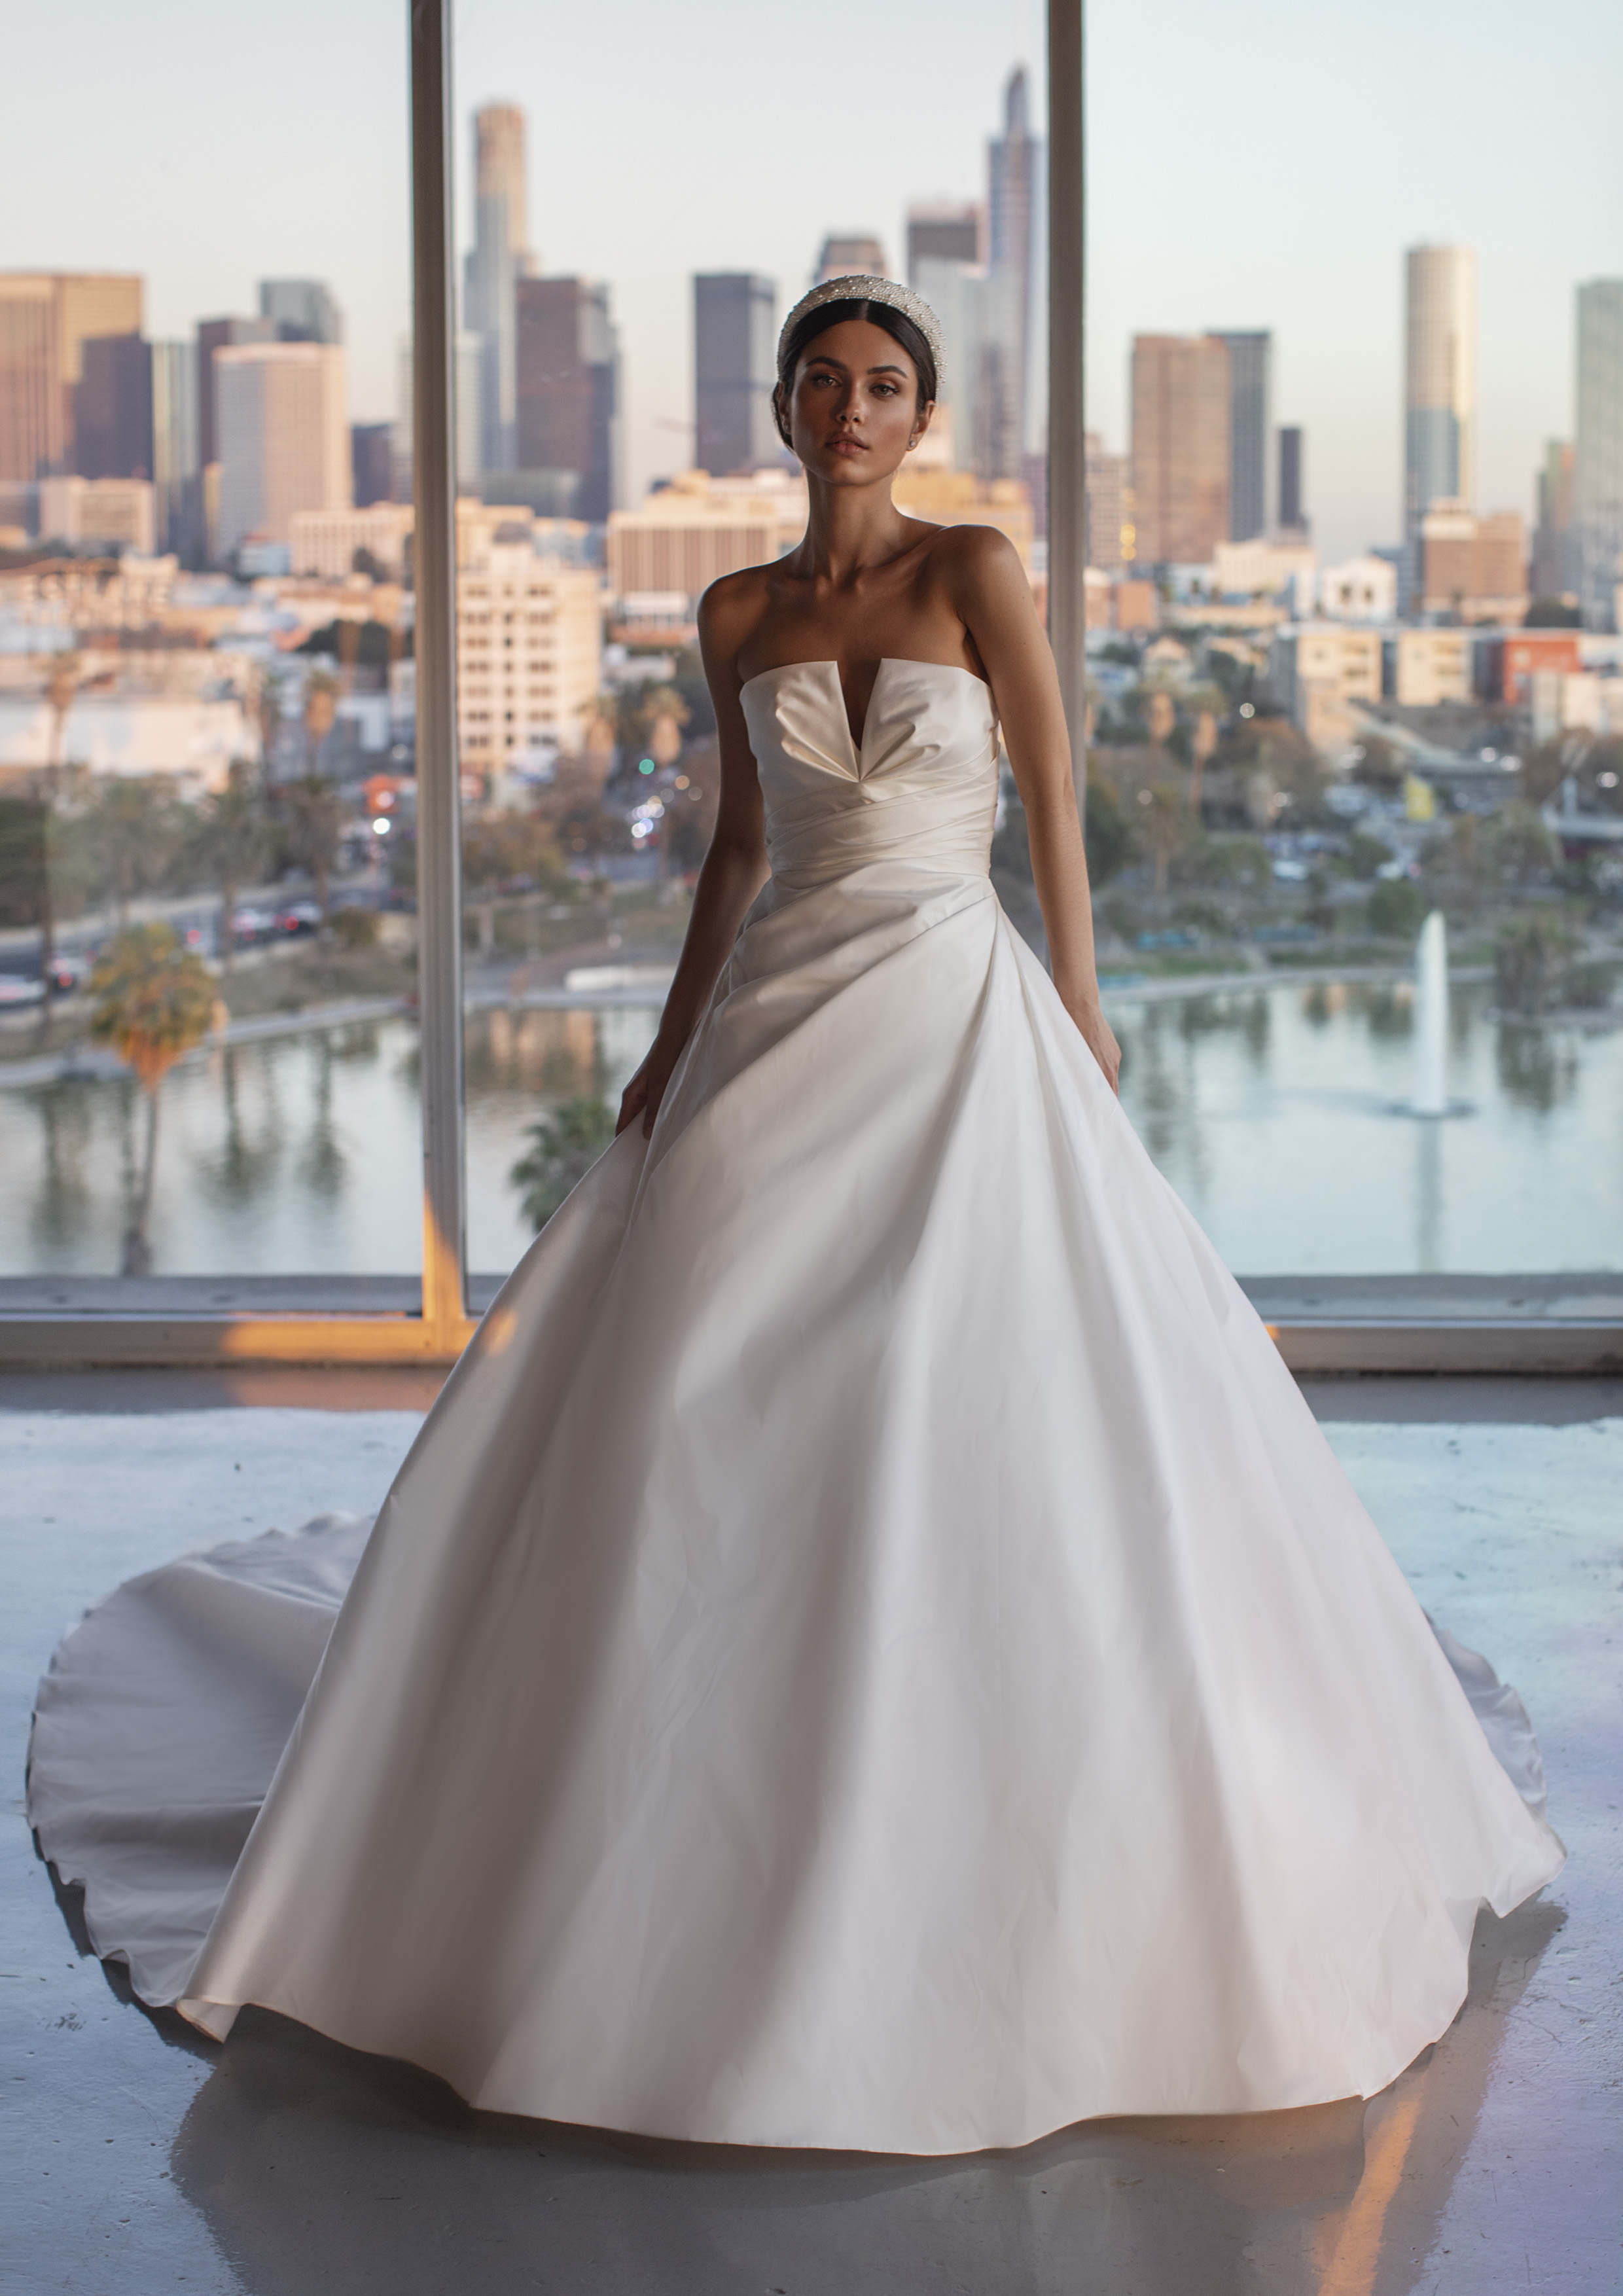 Vestido de noiva Princesa | Modelo Haver da Pronovias 2021 Cruise Collection